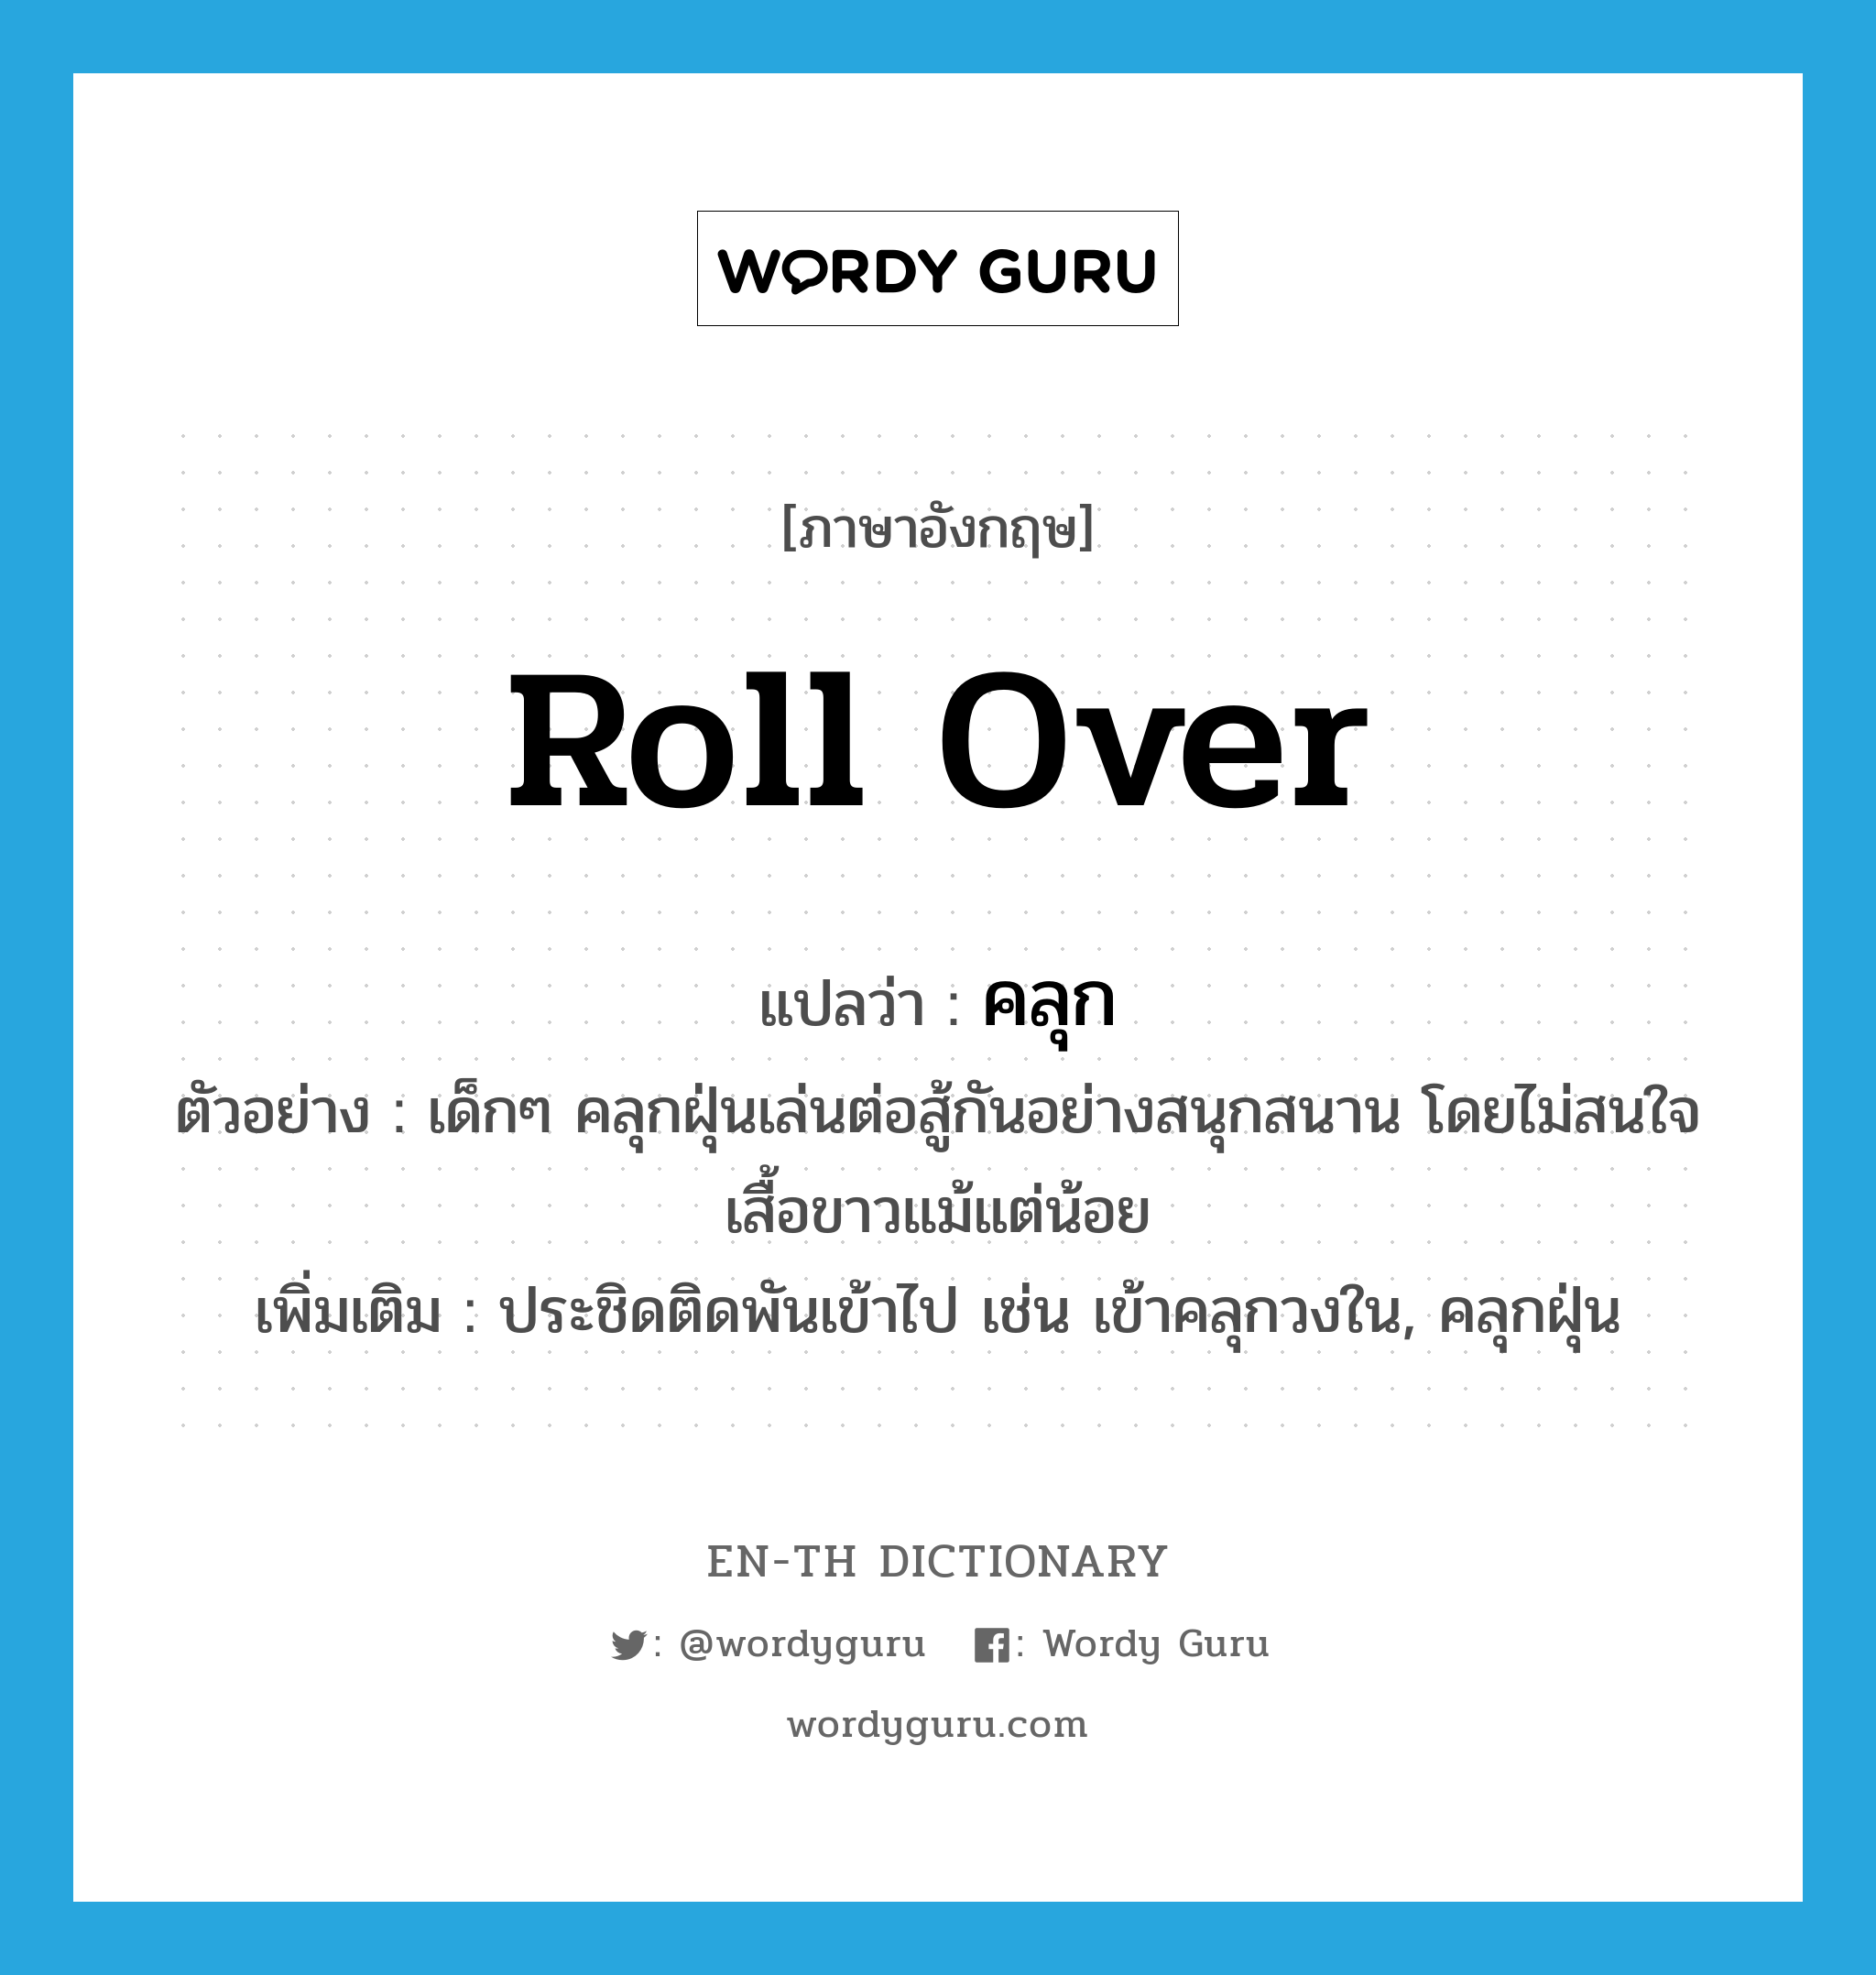 roll over แปลว่า?, คำศัพท์ภาษาอังกฤษ roll over แปลว่า คลุก ประเภท V ตัวอย่าง เด็กๆ คลุกฝุ่นเล่นต่อสู้กันอย่างสนุกสนาน โดยไม่สนใจเสื้อขาวแม้แต่น้อย เพิ่มเติม ประชิดติดพันเข้าไป เช่น เข้าคลุกวงใน, คลุกฝุ่น หมวด V